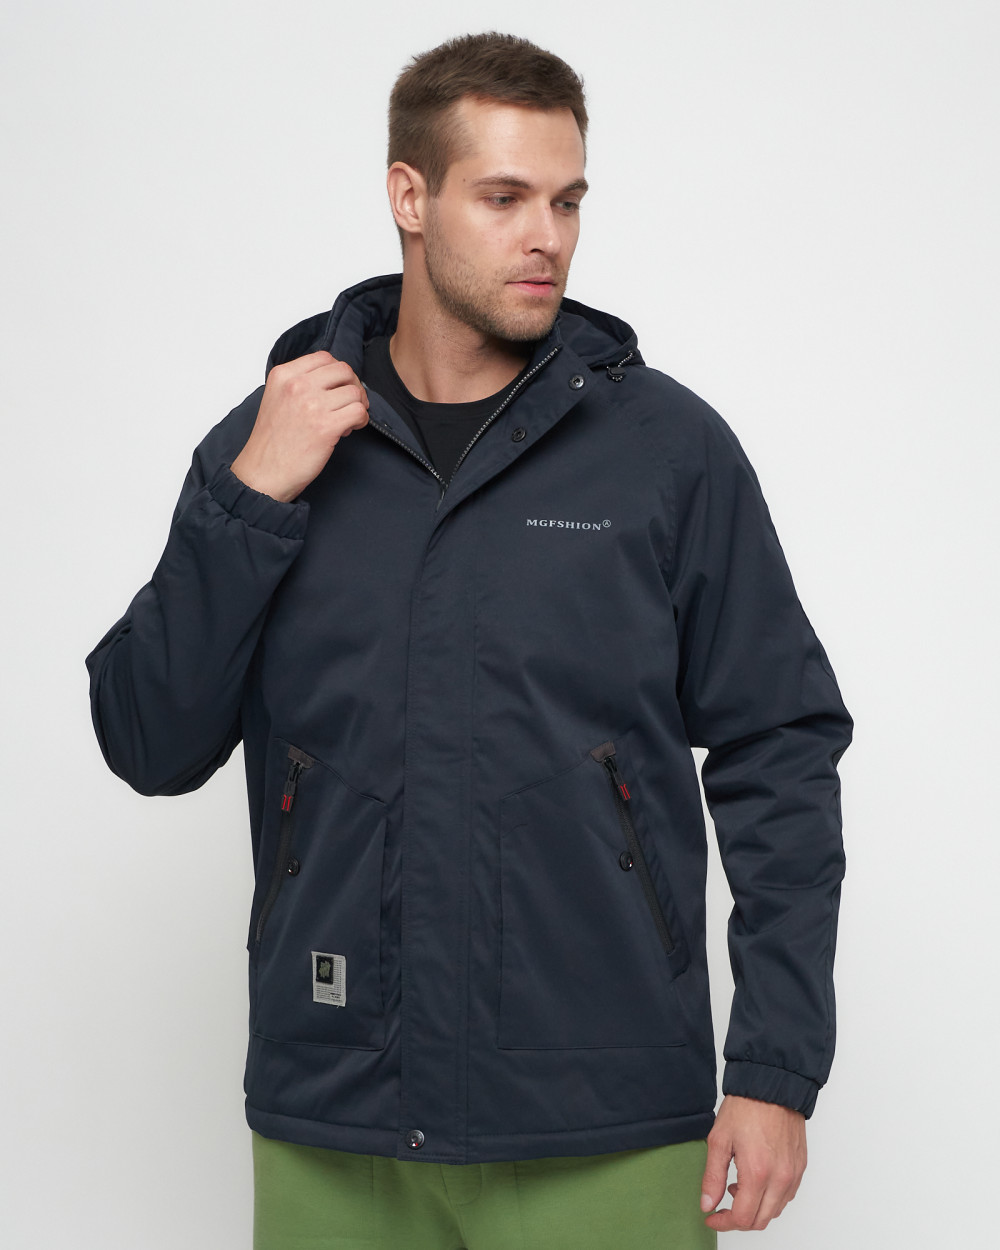 Купить куртку мужскую спортивную весеннюю оптом от производителя недорого в Москве 8598TS 1